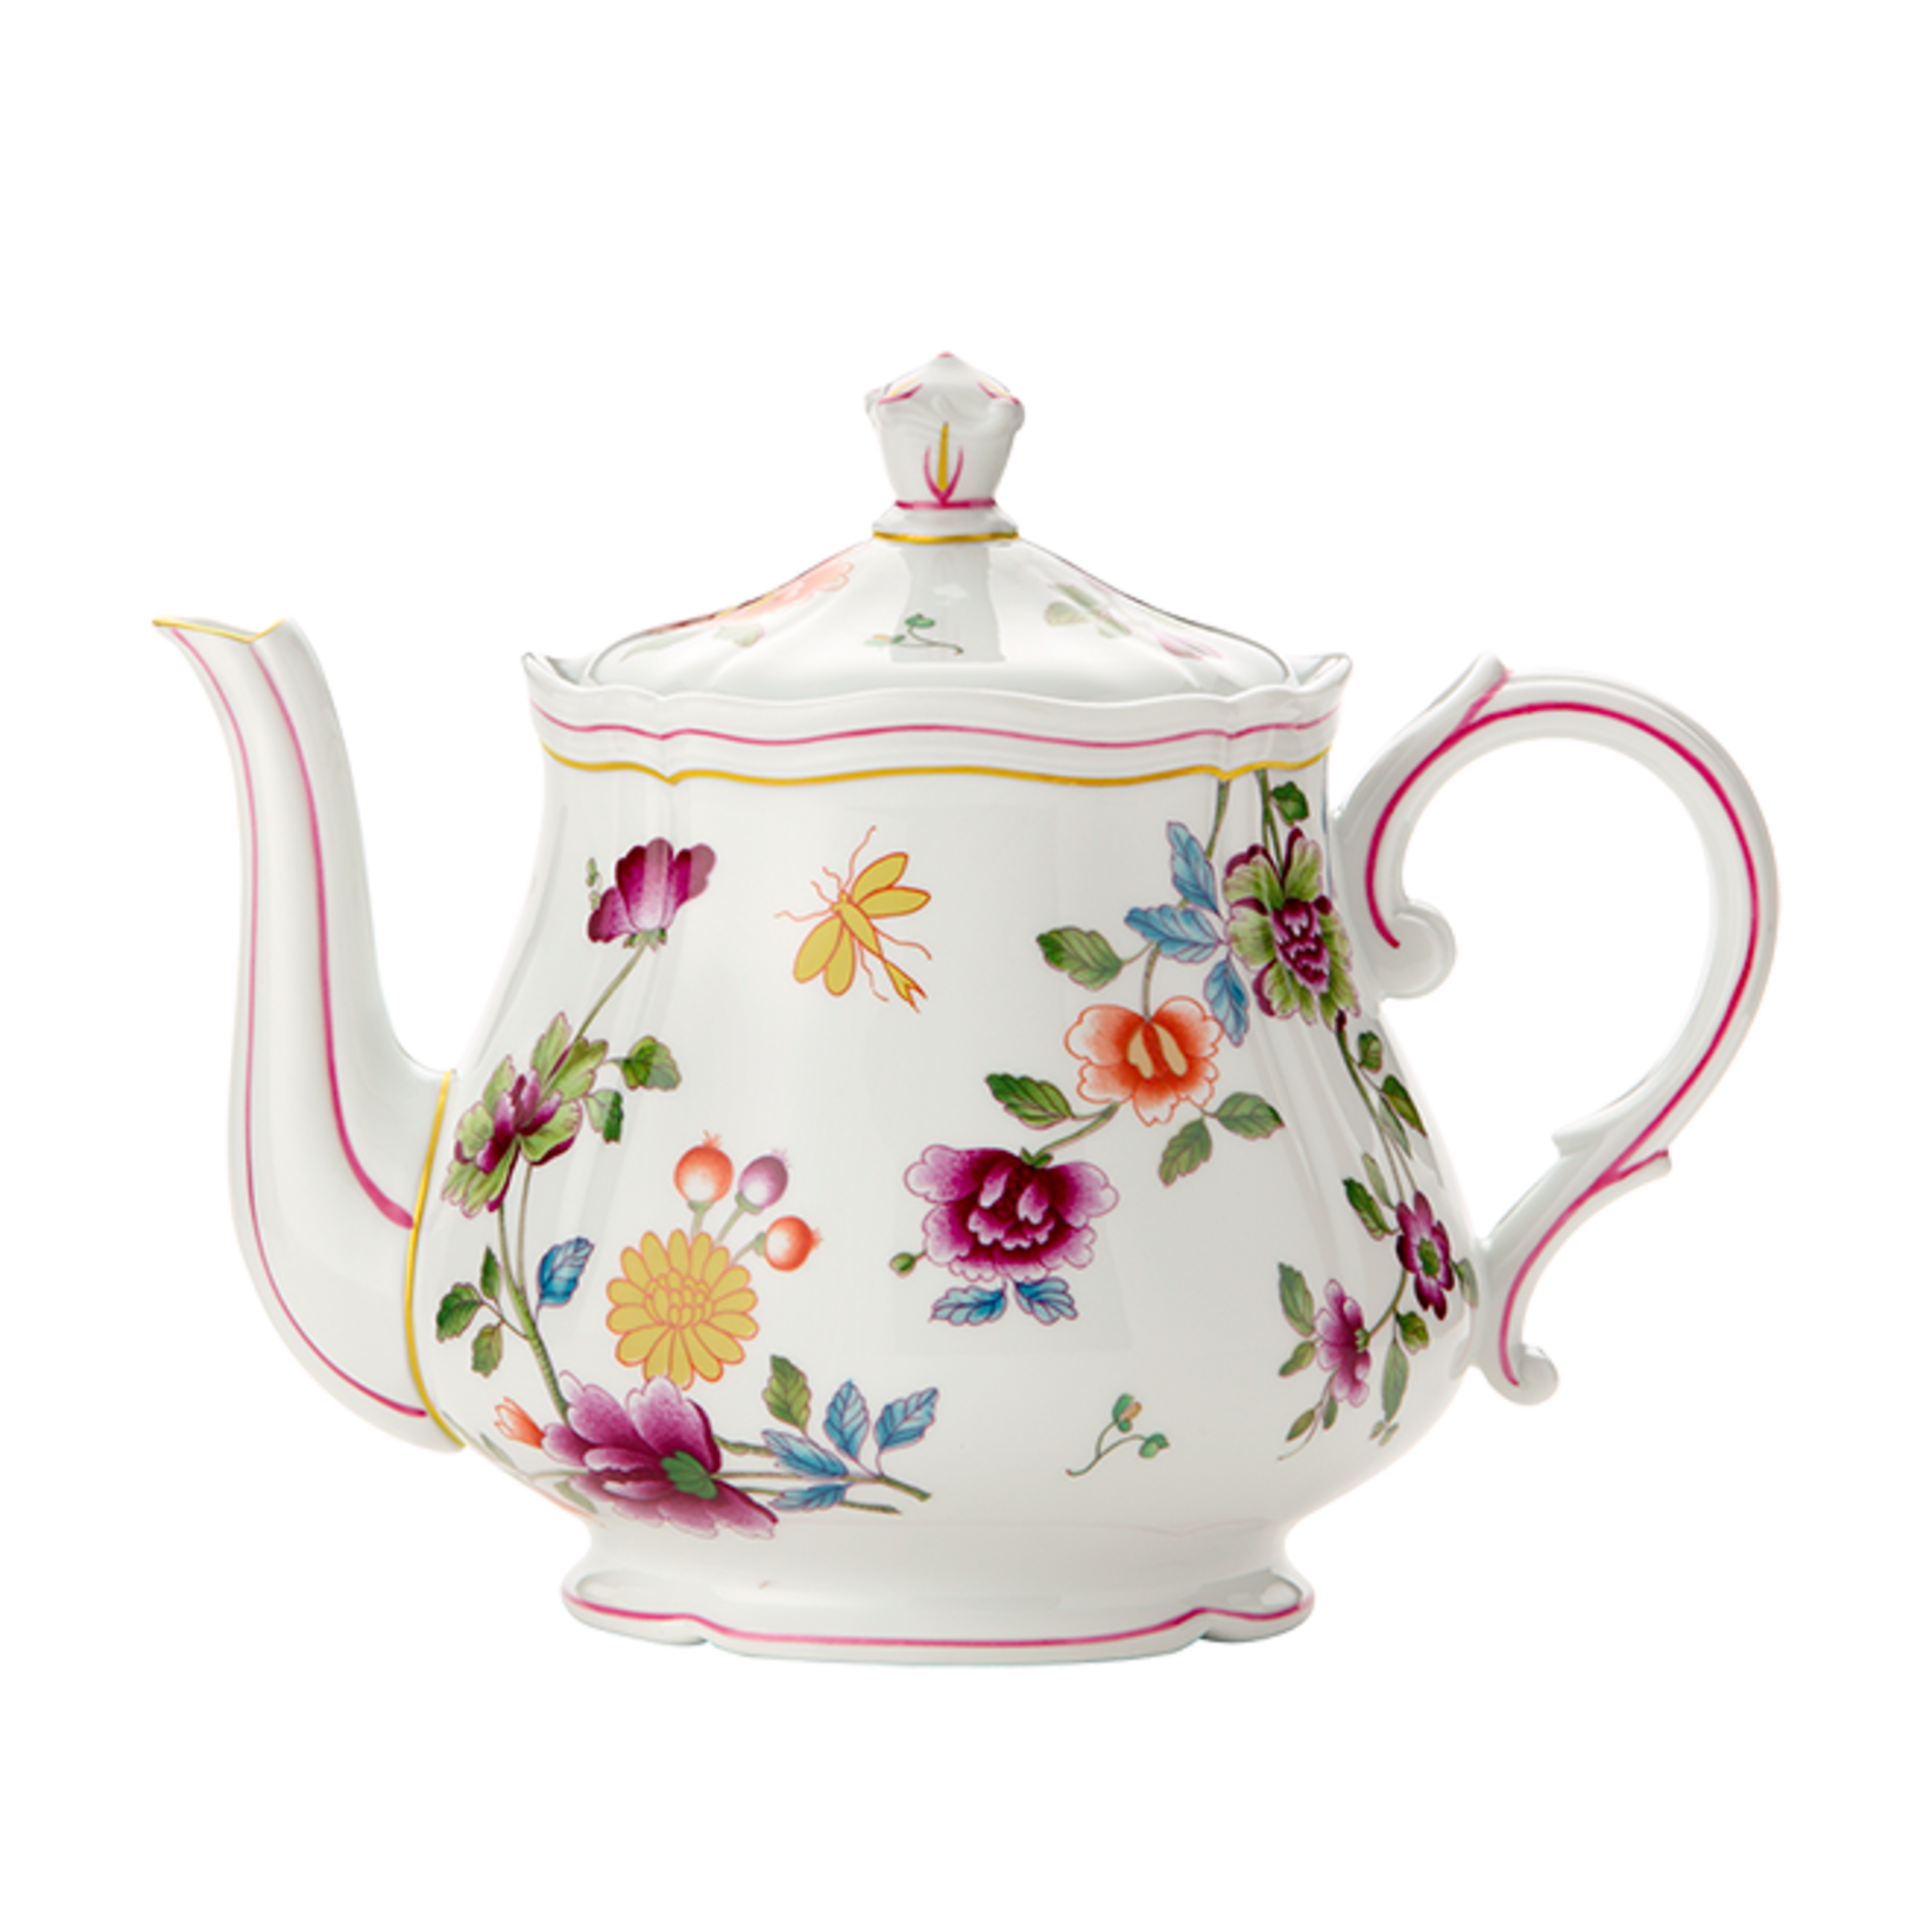 Théière en Verre pour Fleur de Thé - TeaPot Renaissance